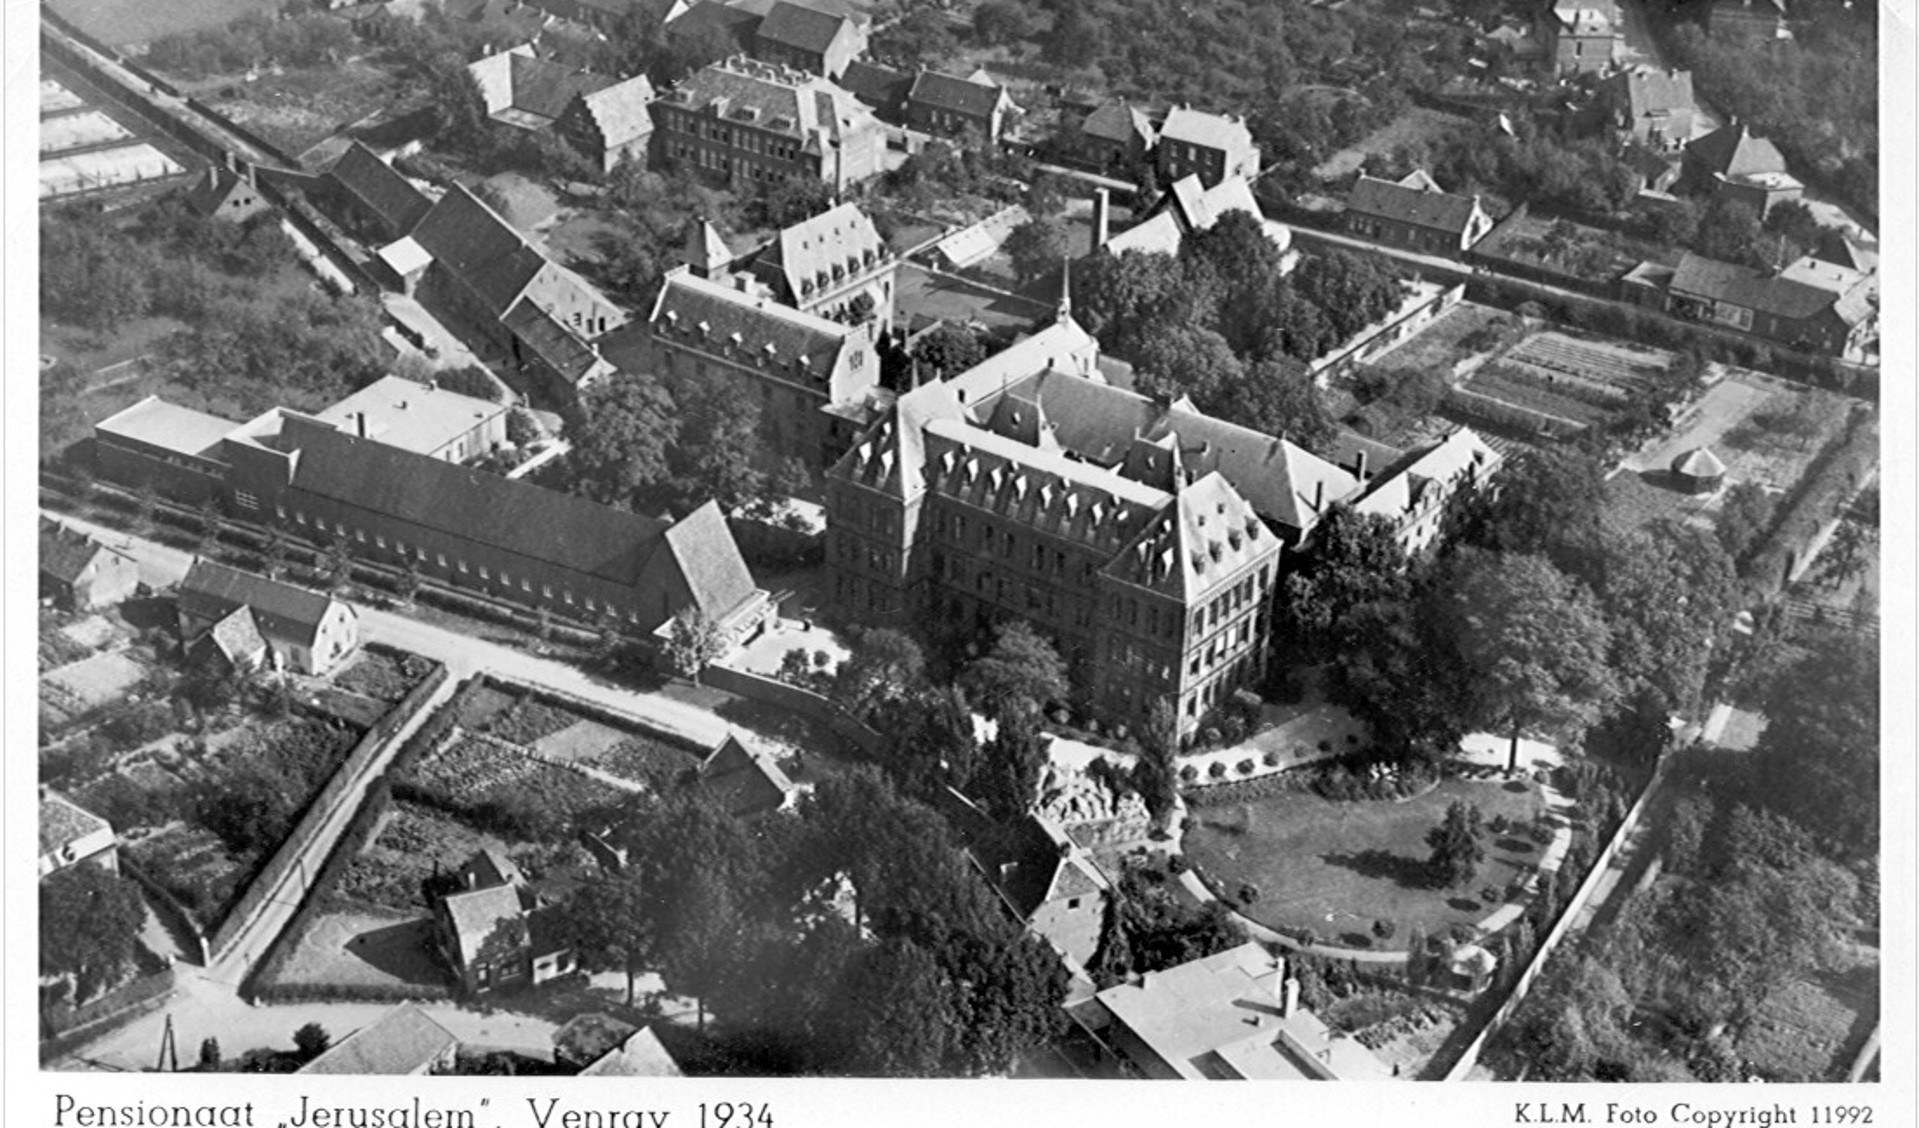 Het voormalige klooster en pensionaat Jeruzalem staat centraal in Venray van toen.